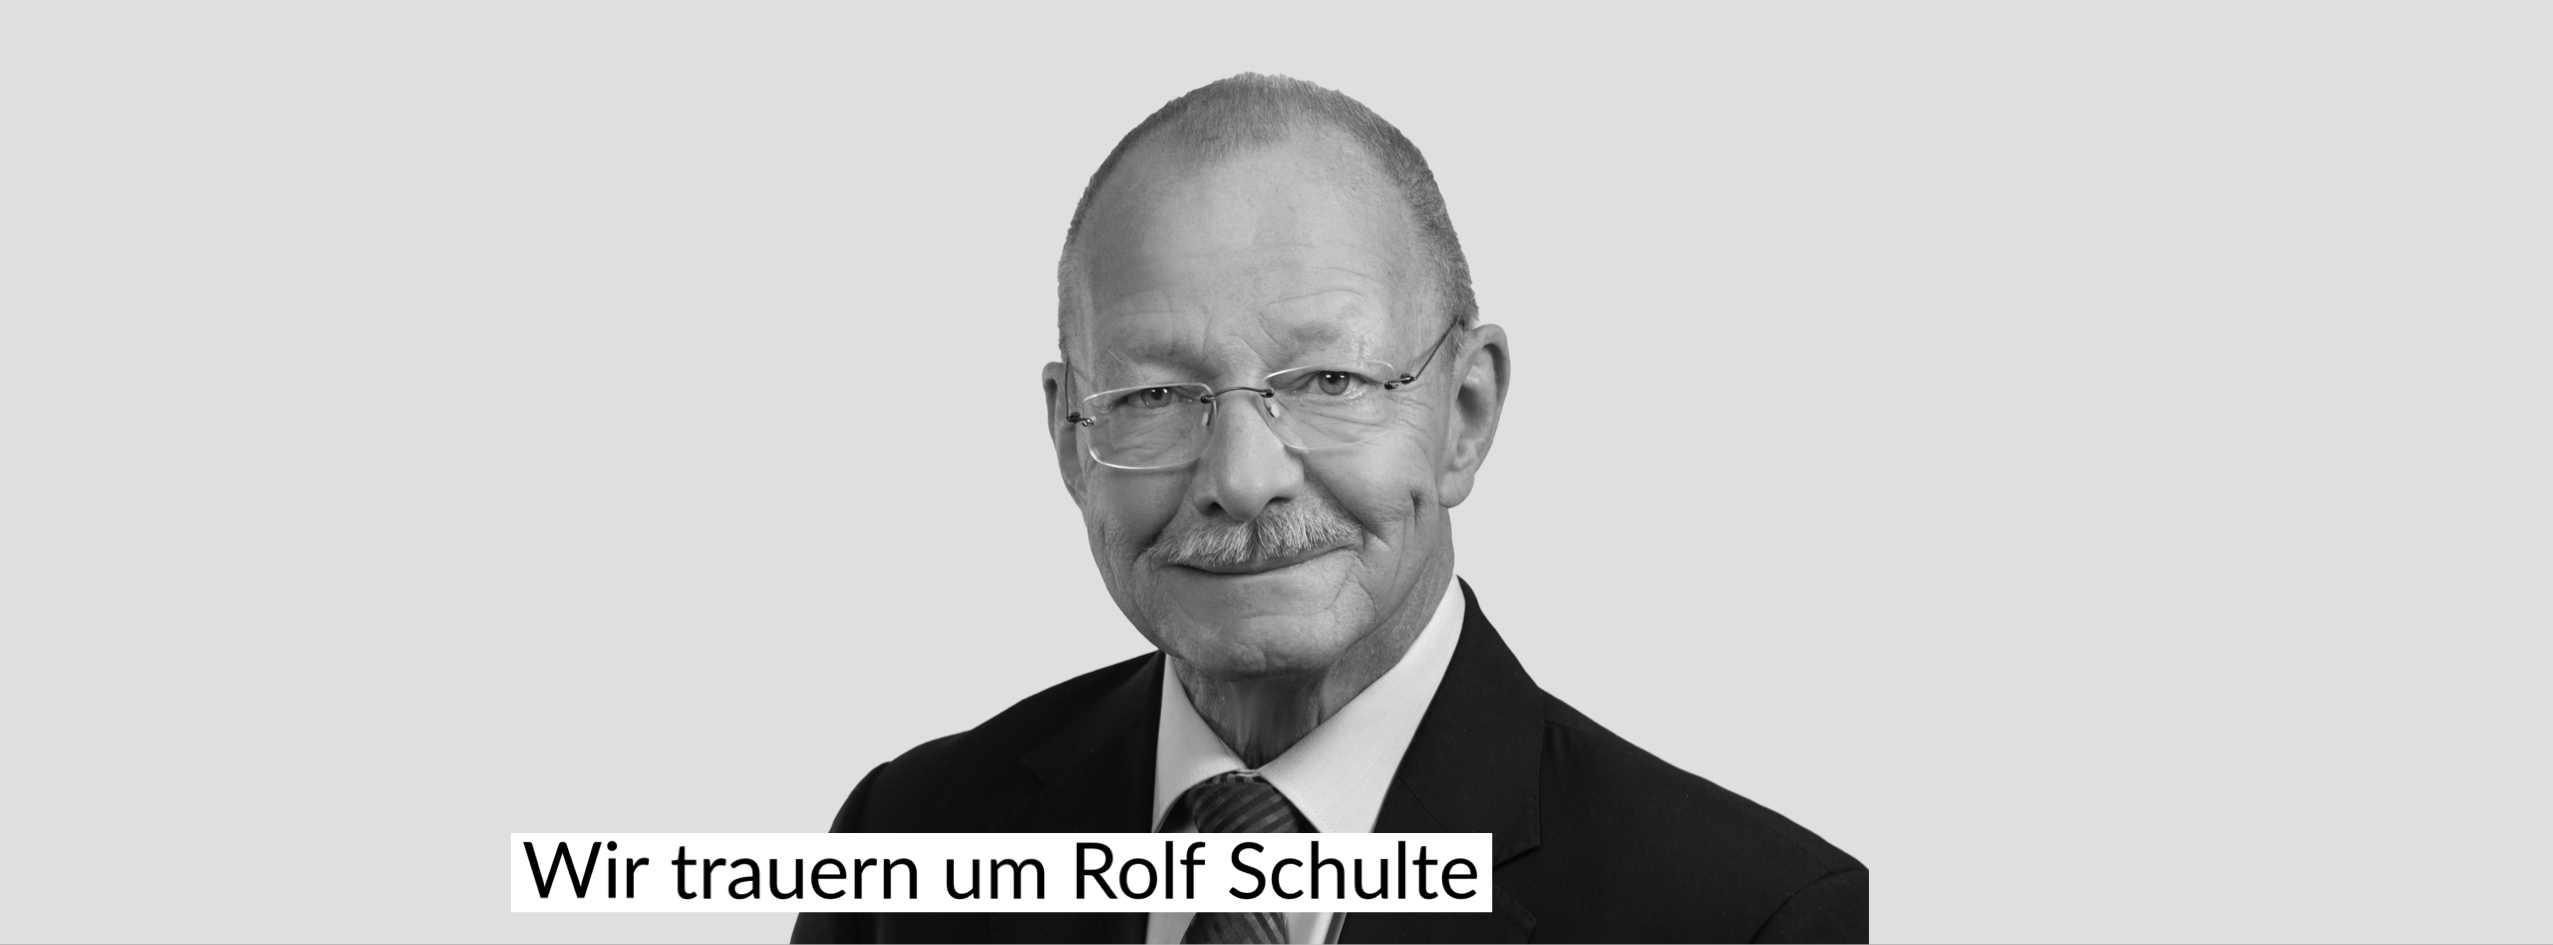 Wir trauern um Rolf Schulte